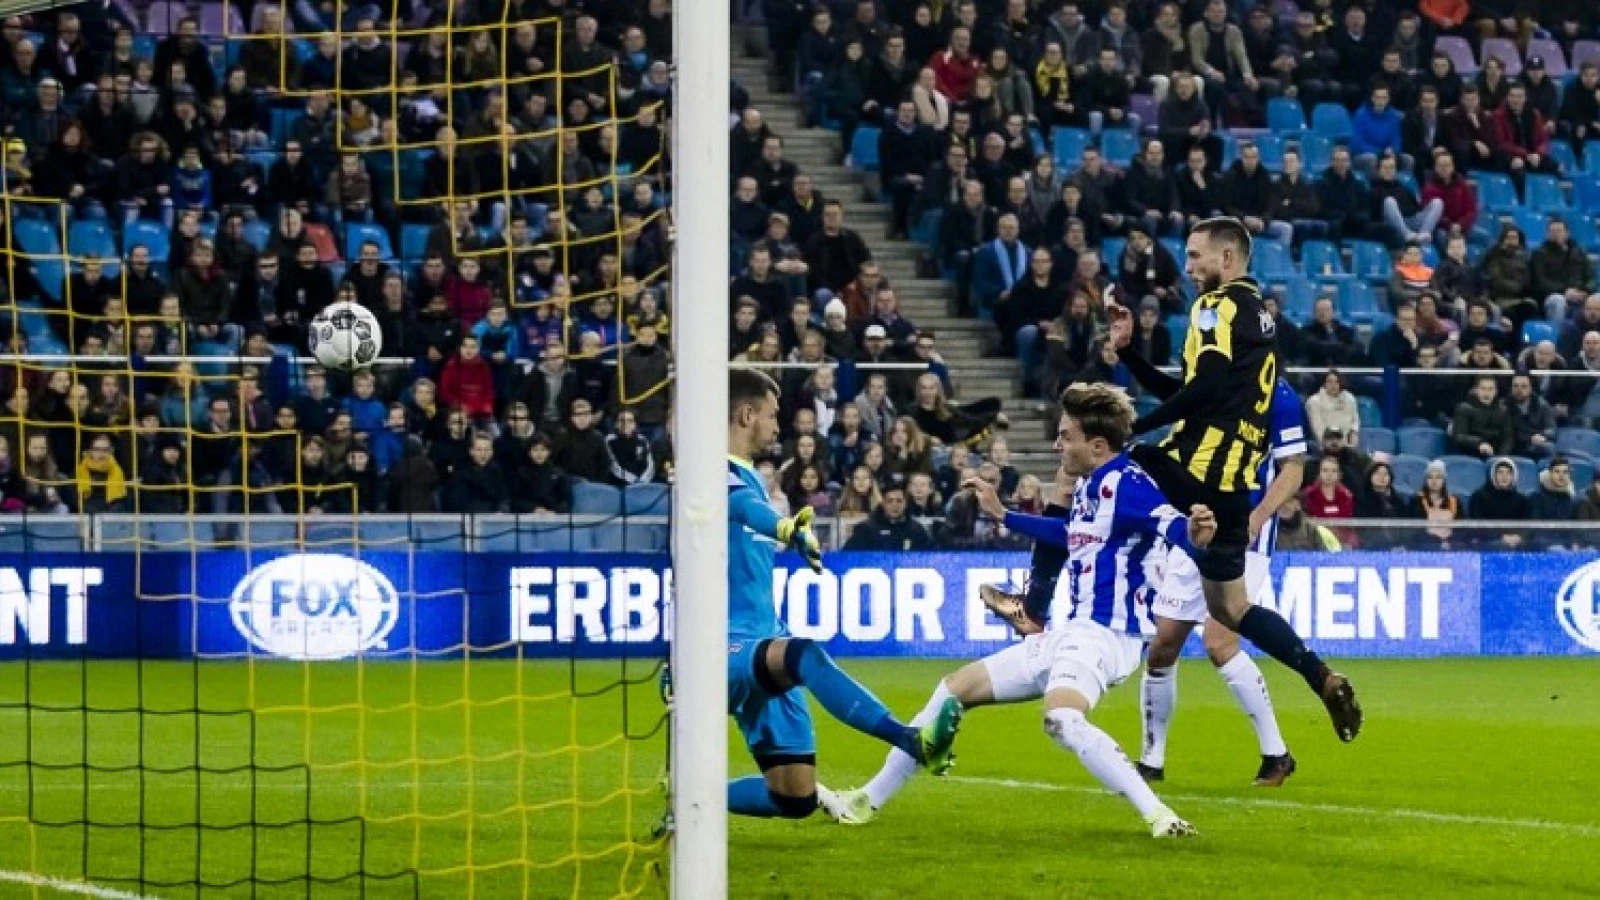 UPDATE | Matavz vier duels geschorst en mist duel met Feyenoord